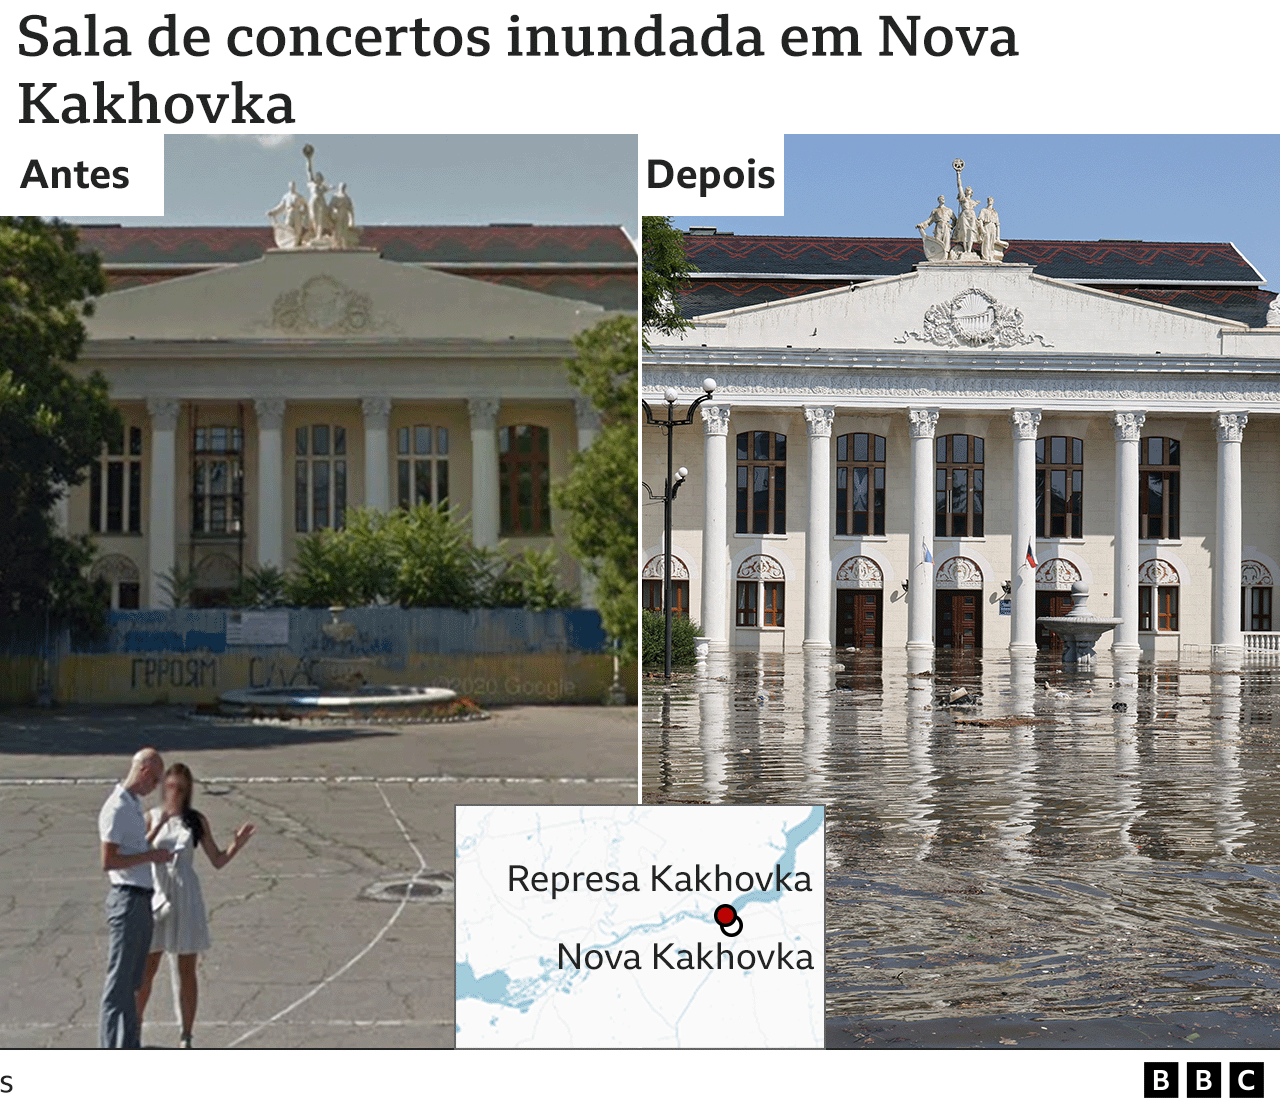 Imagens antes e depois da inundação da sala de concertos em Nova Kakhova